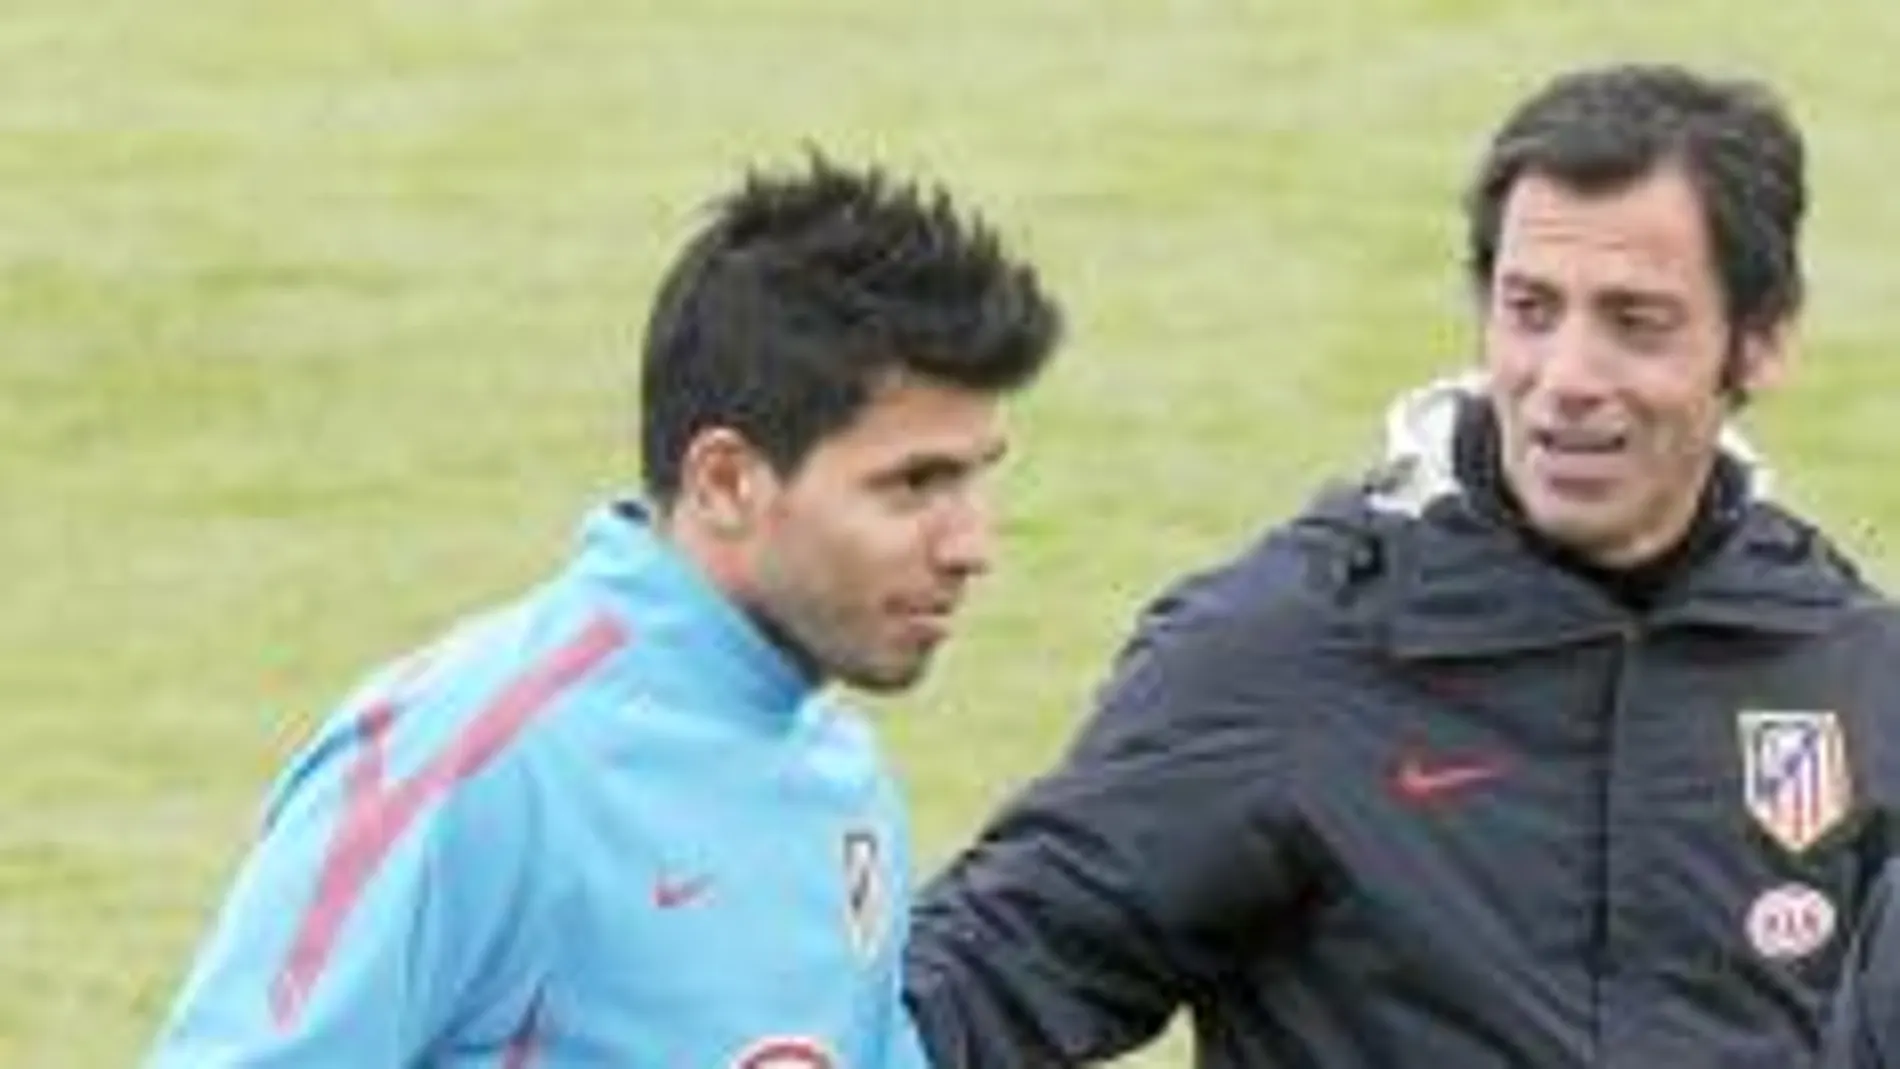 Agüero, junto a su entrenador, Quique Sánchez Flores, durante el entrenamiento de ayer